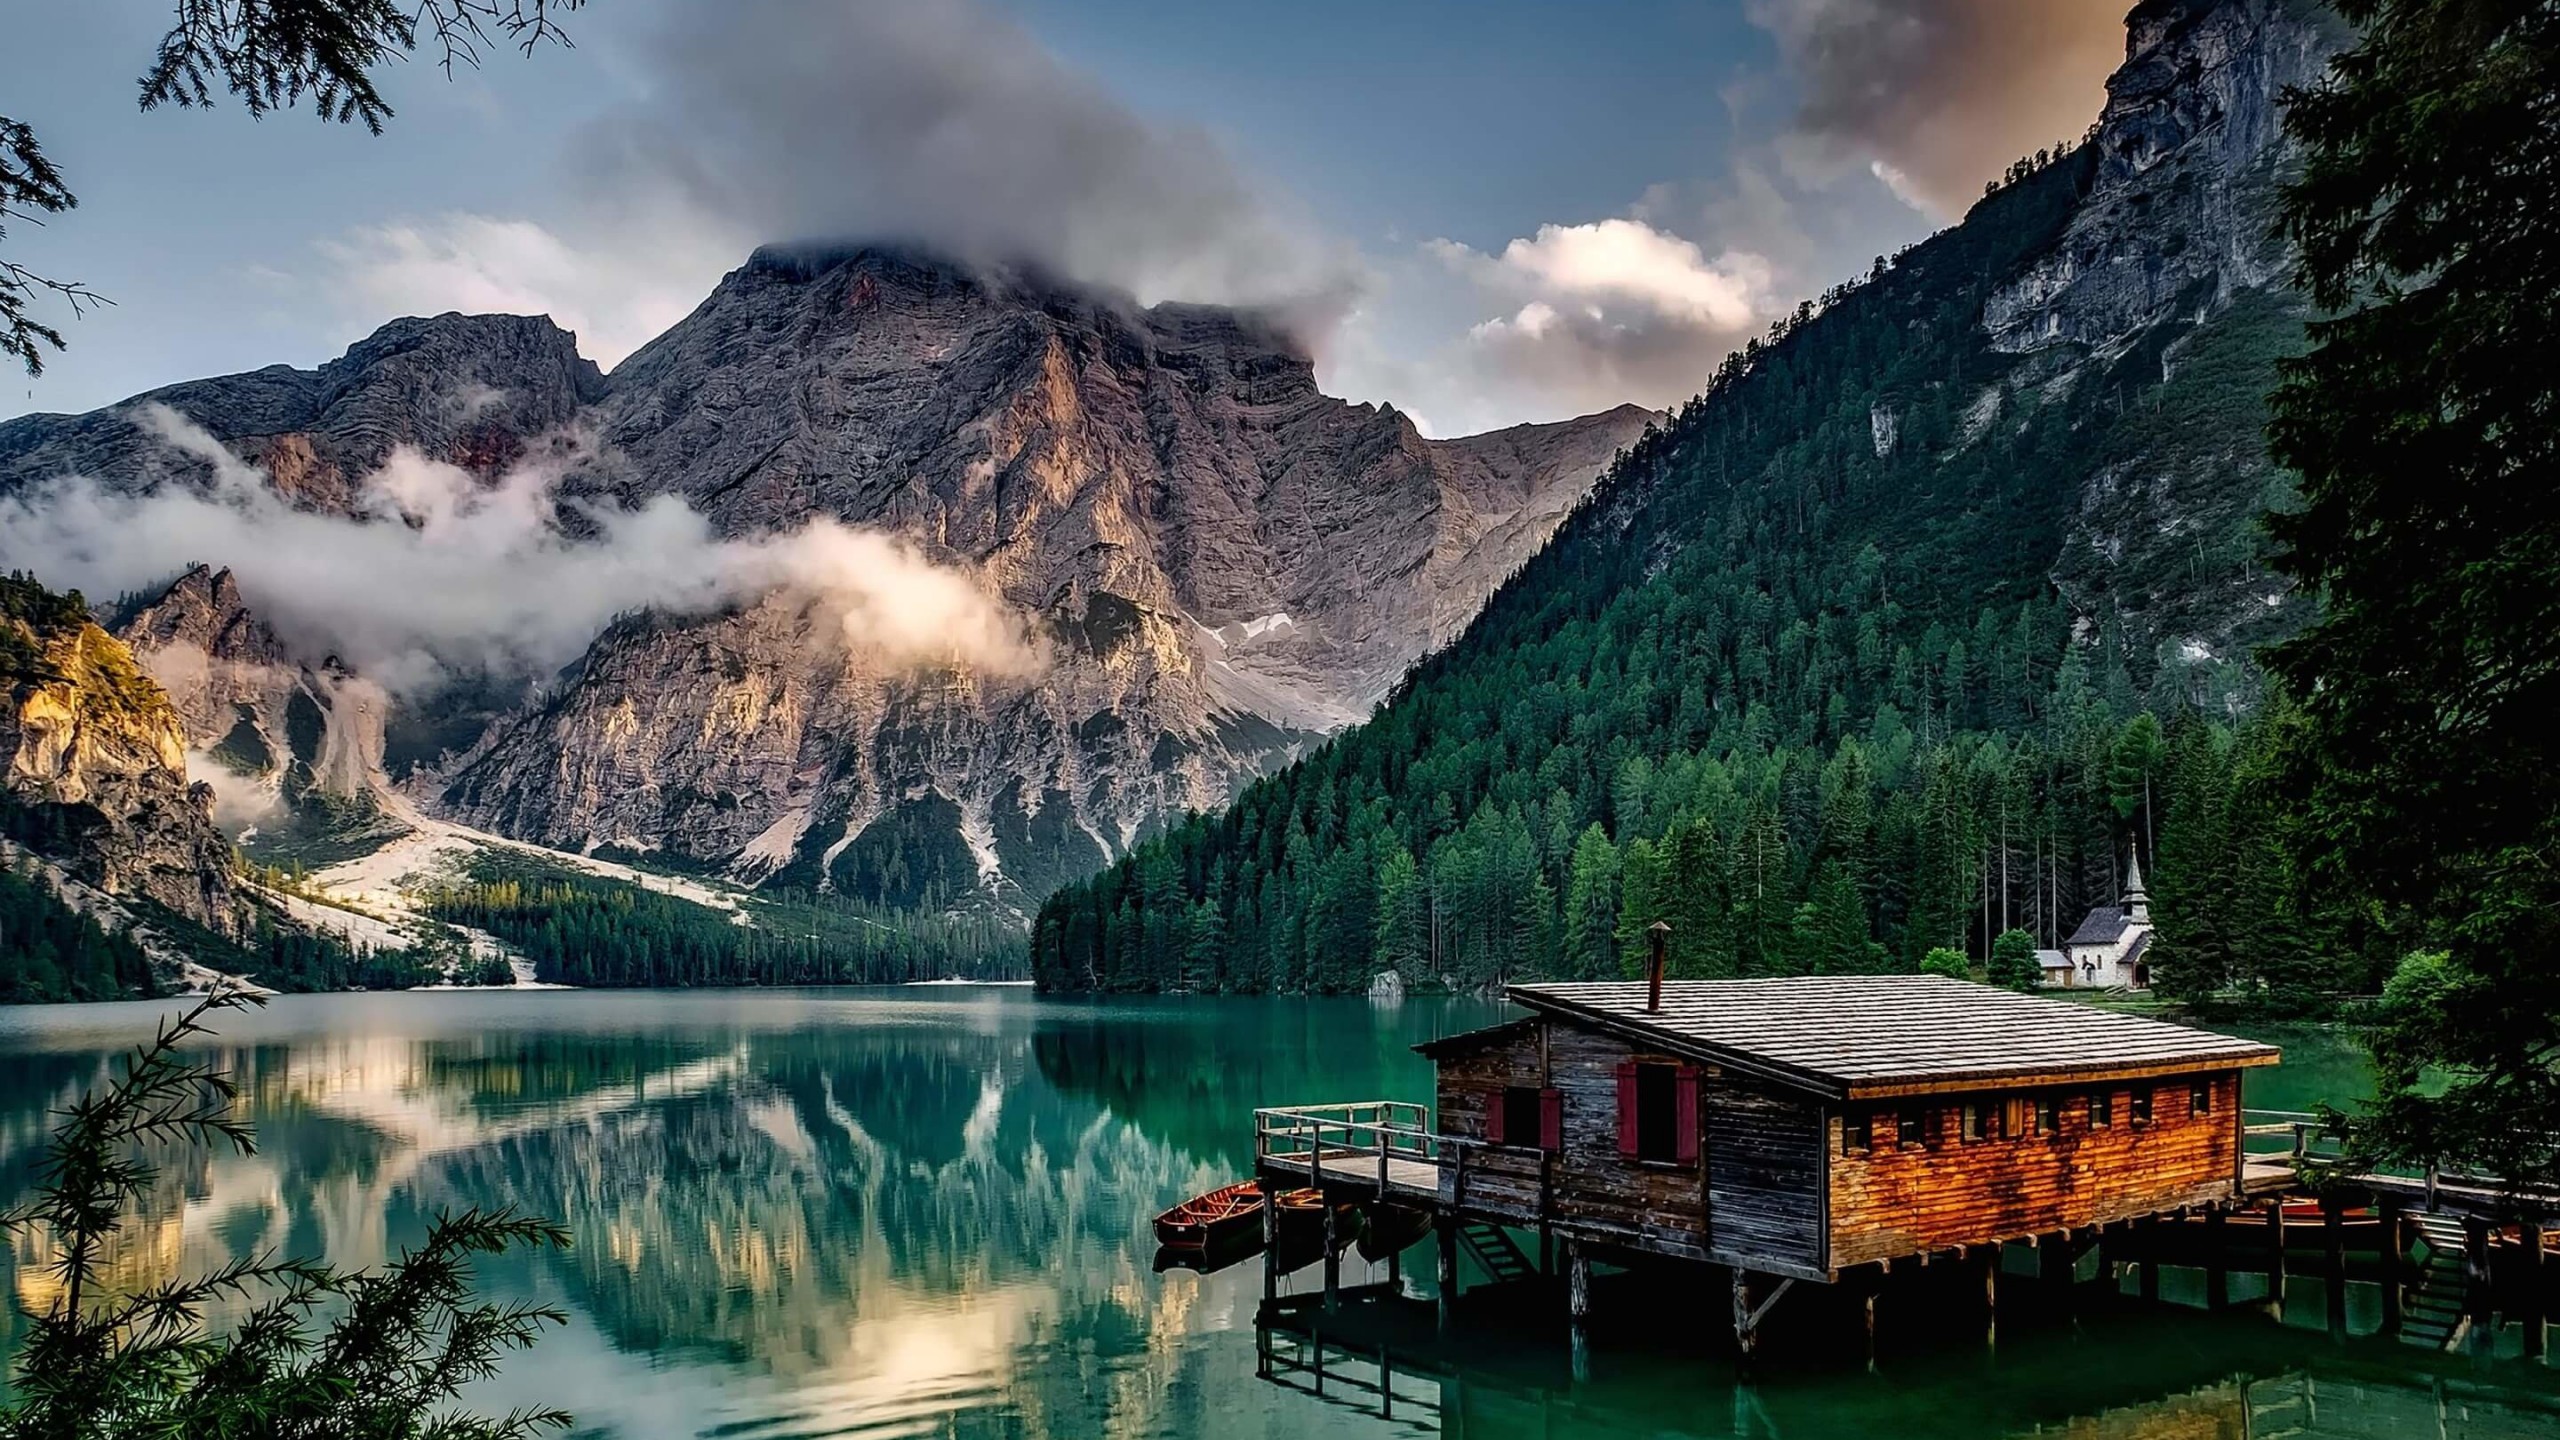 Lake Prags - Italy Wallpaper for Desktop 2560x1440